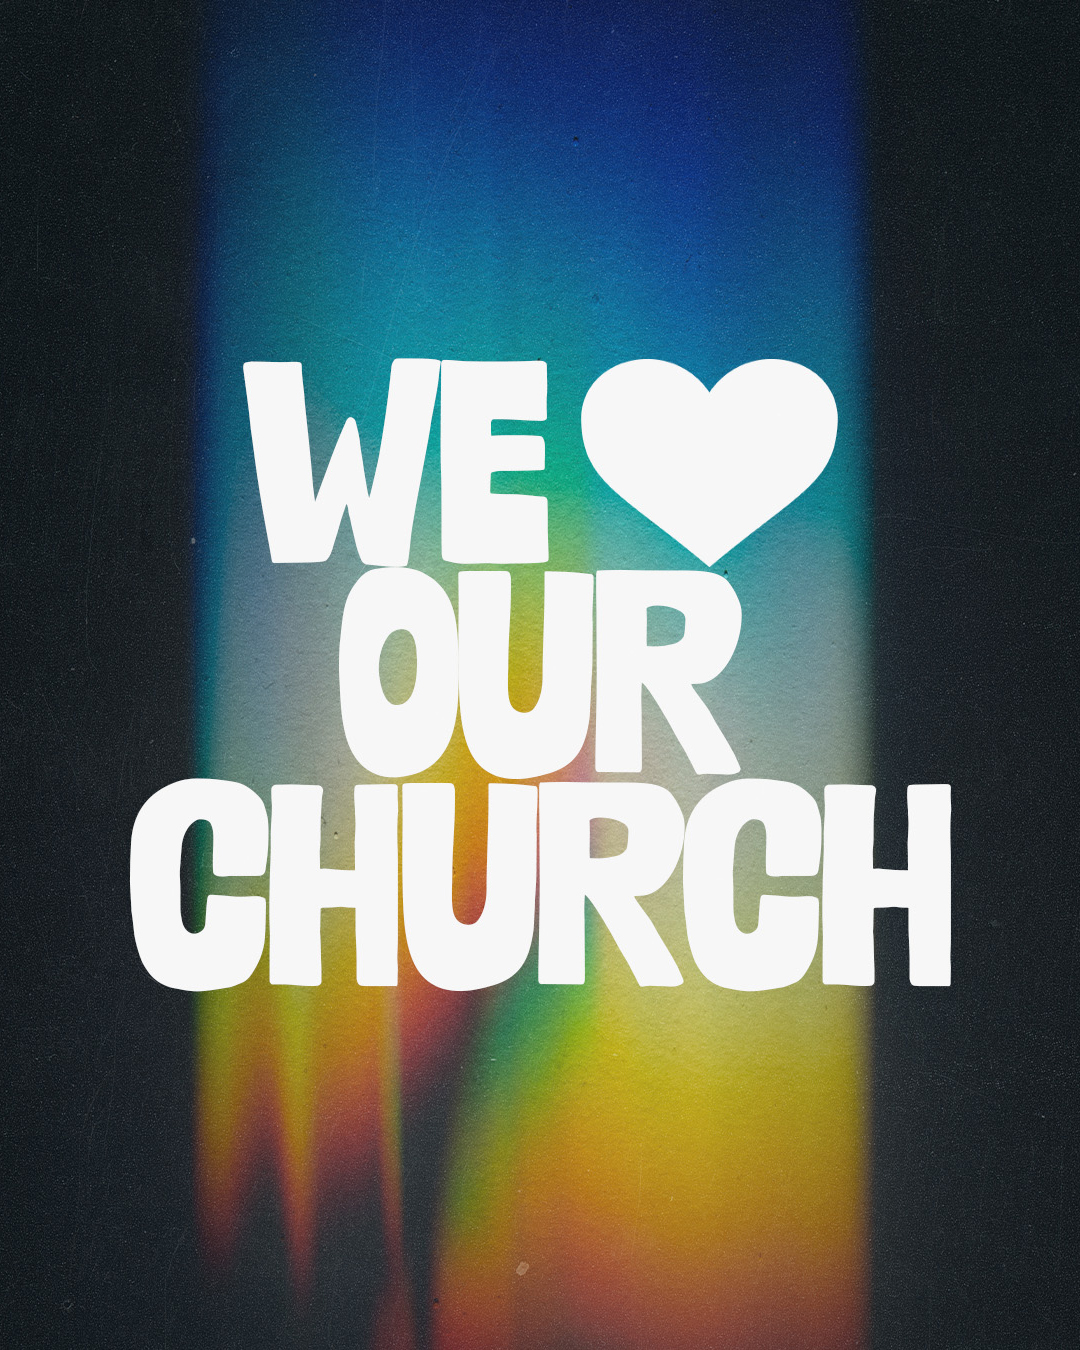 We love our church